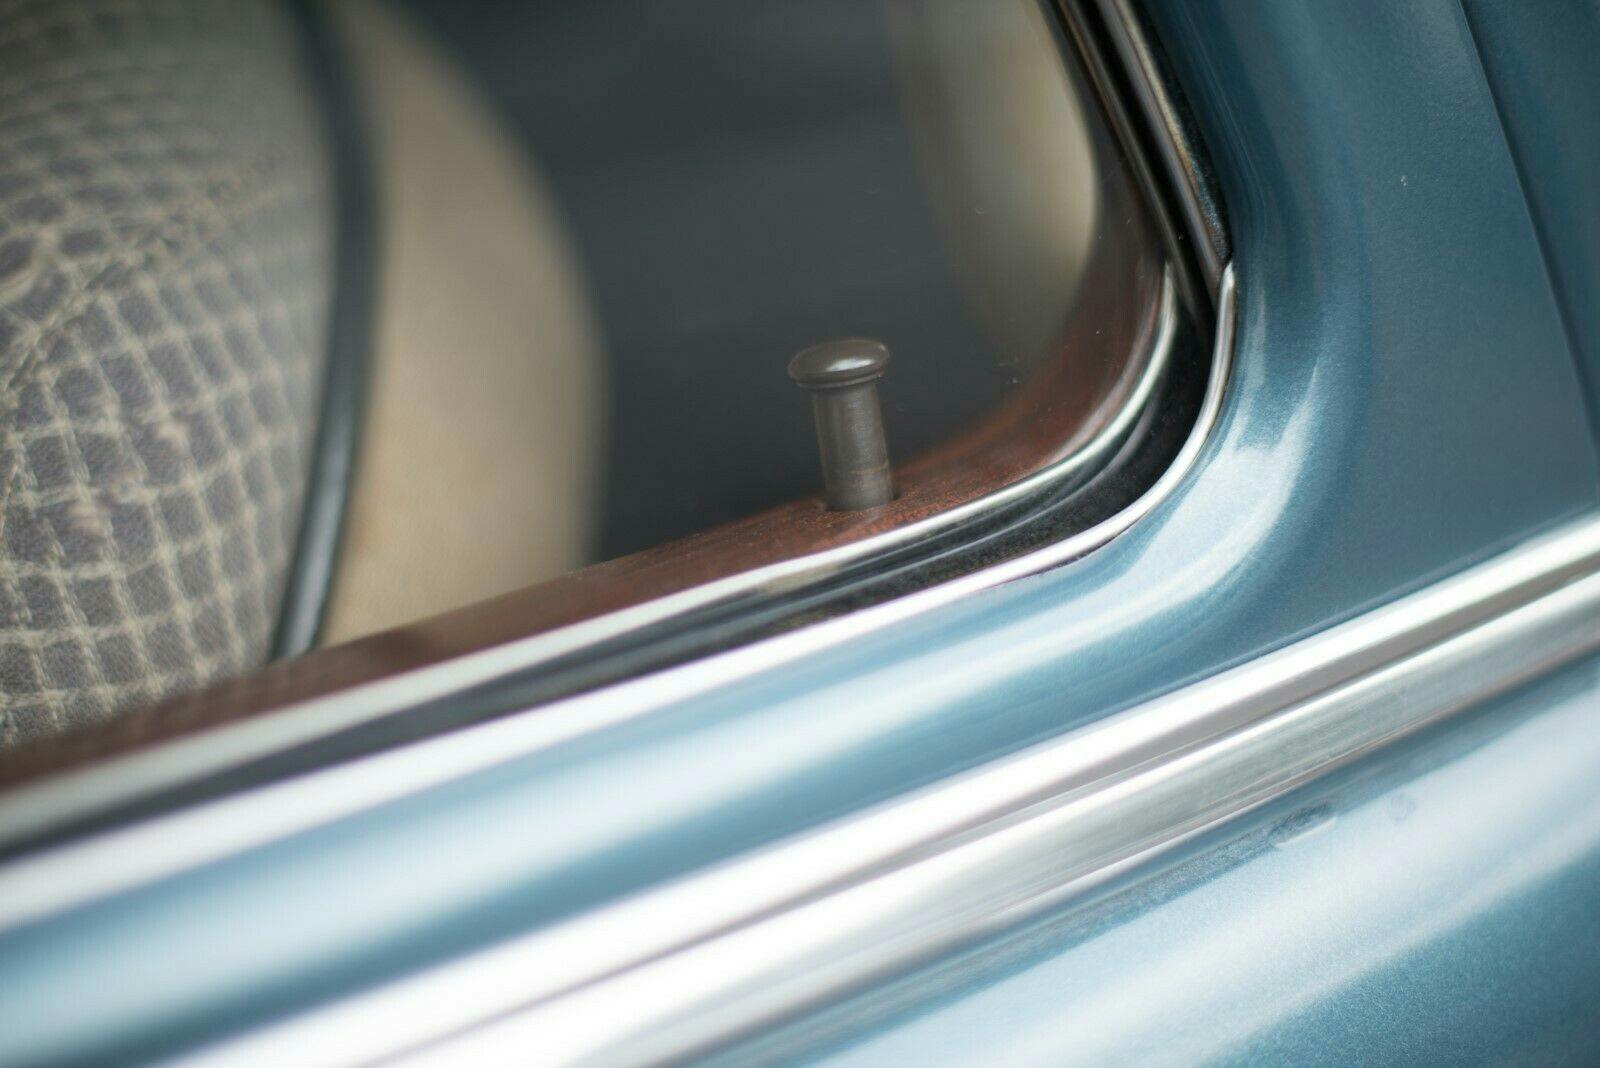 1949 Packard Deluxe Club Sedan - Close-up door lock button